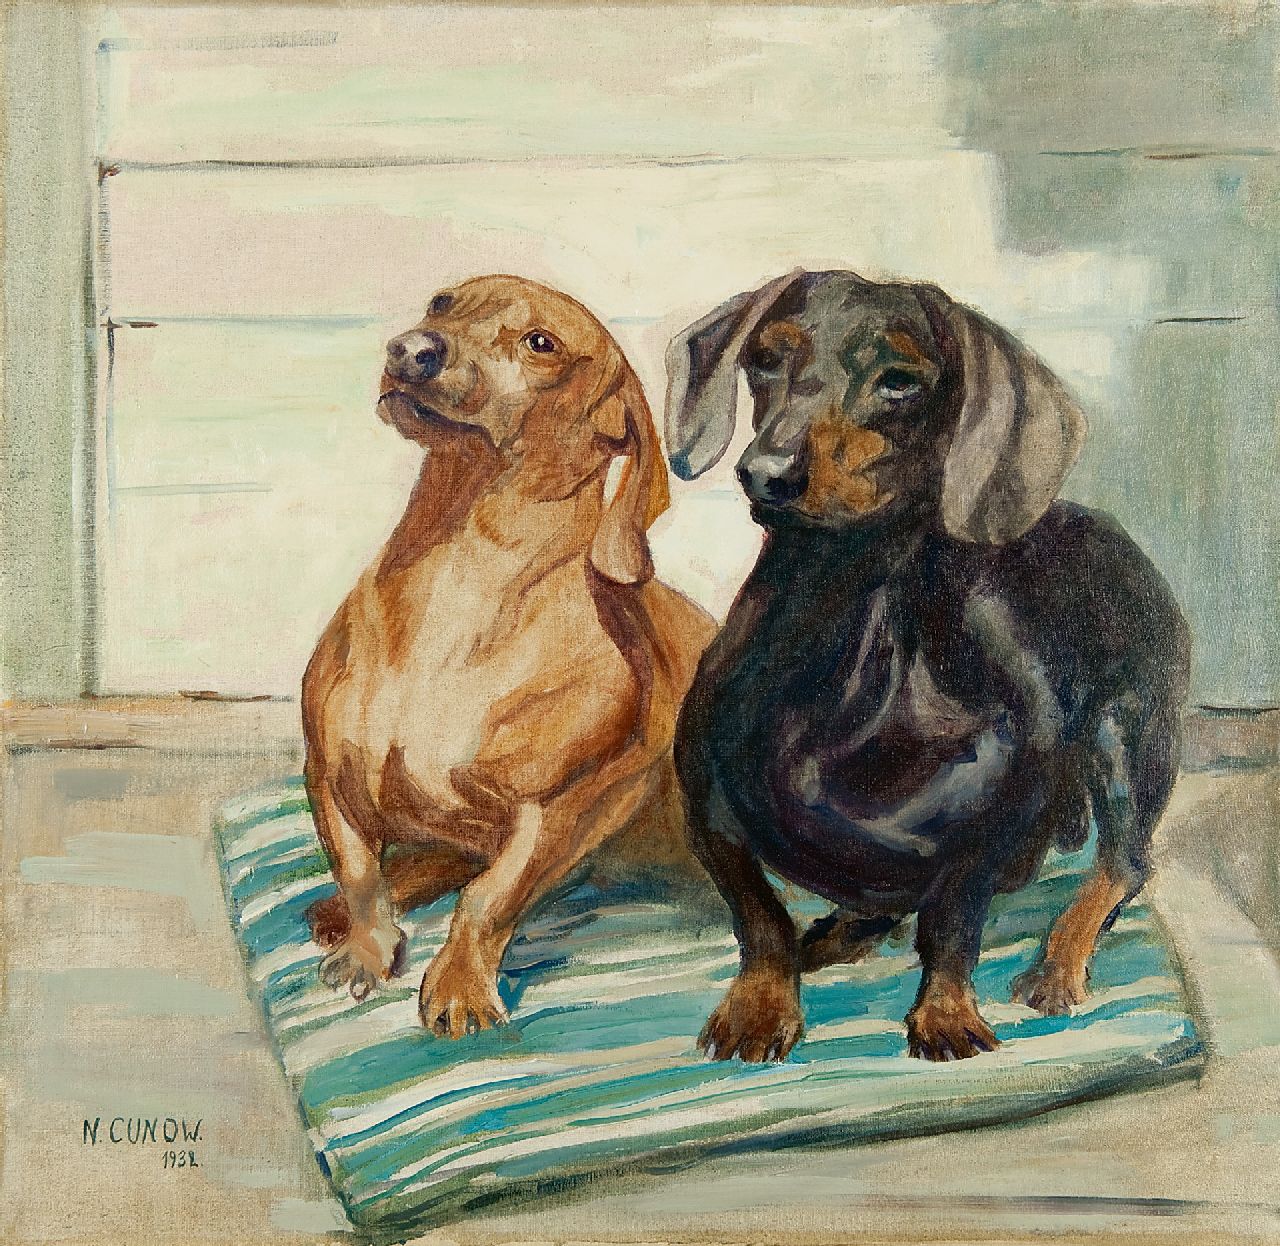 Cunow-Detjen N.  | Nelly Cunow-Detjen | Schilderijen te koop aangeboden | Twee teckels, olieverf op doek 54,0 x 56,5 cm, gesigneerd linksonder en gedateerd 1932